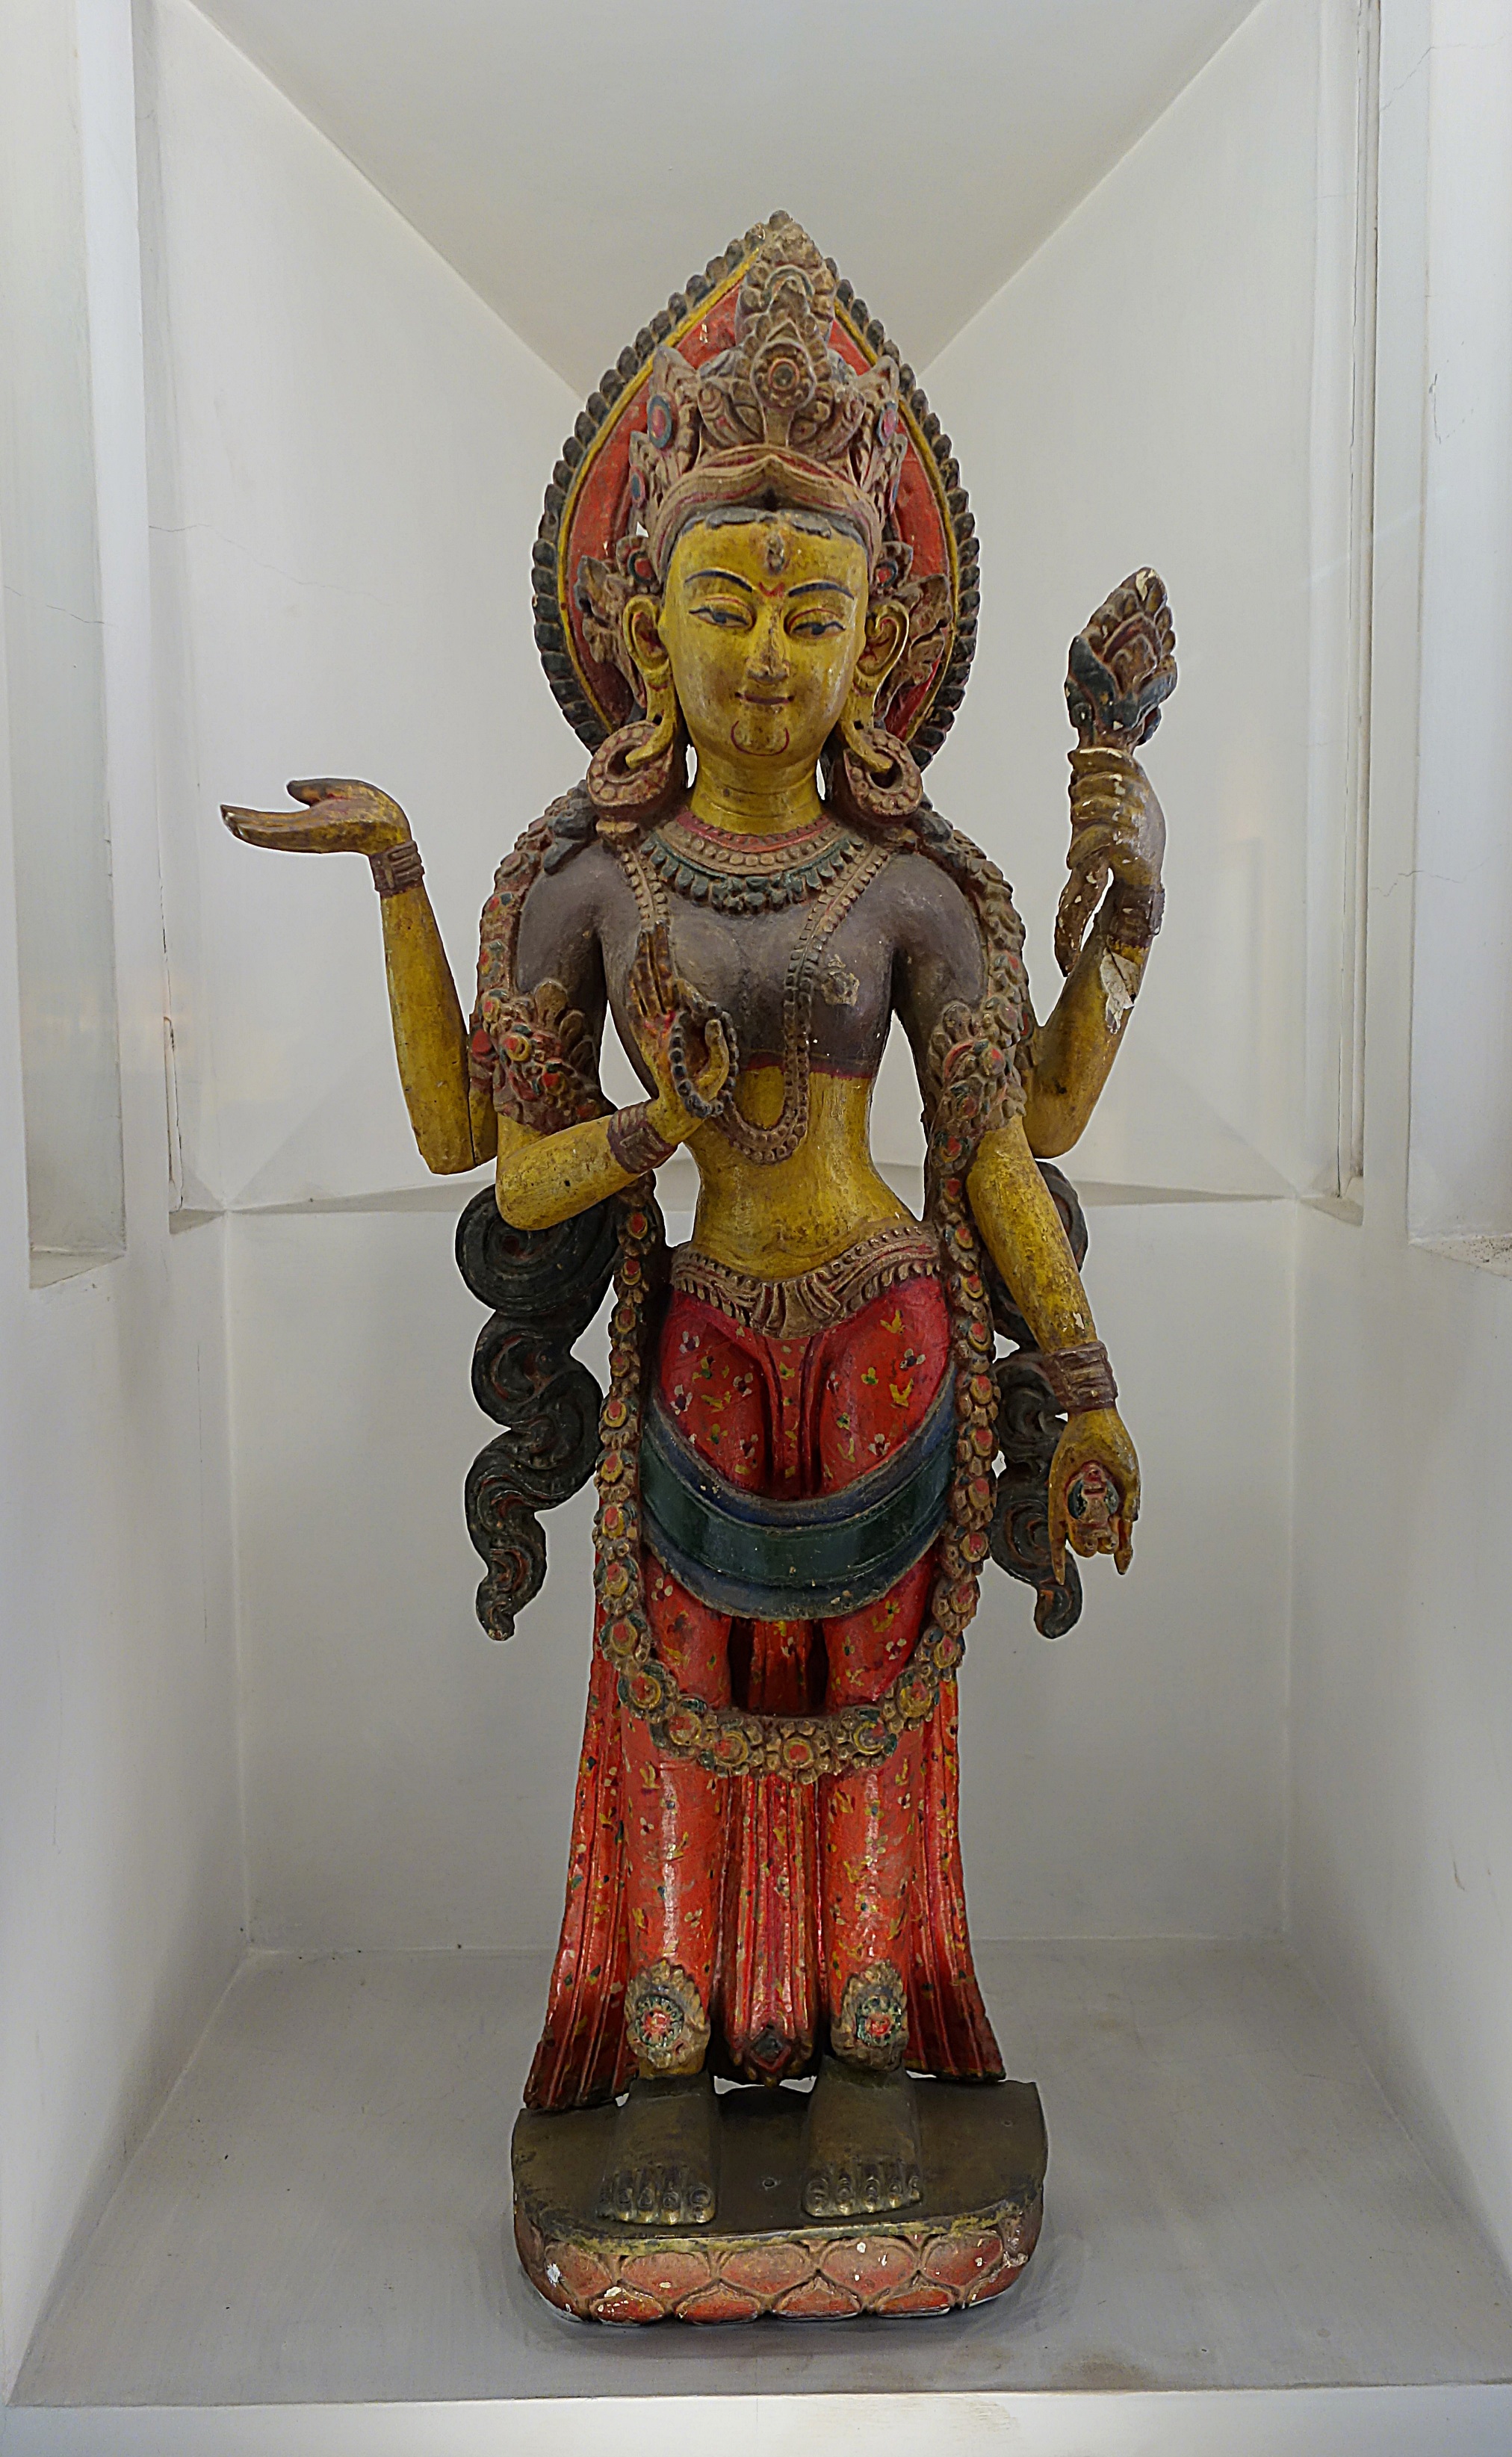 Изображение индуистской богини в музее Катманду. Фото Морошкина В.В.